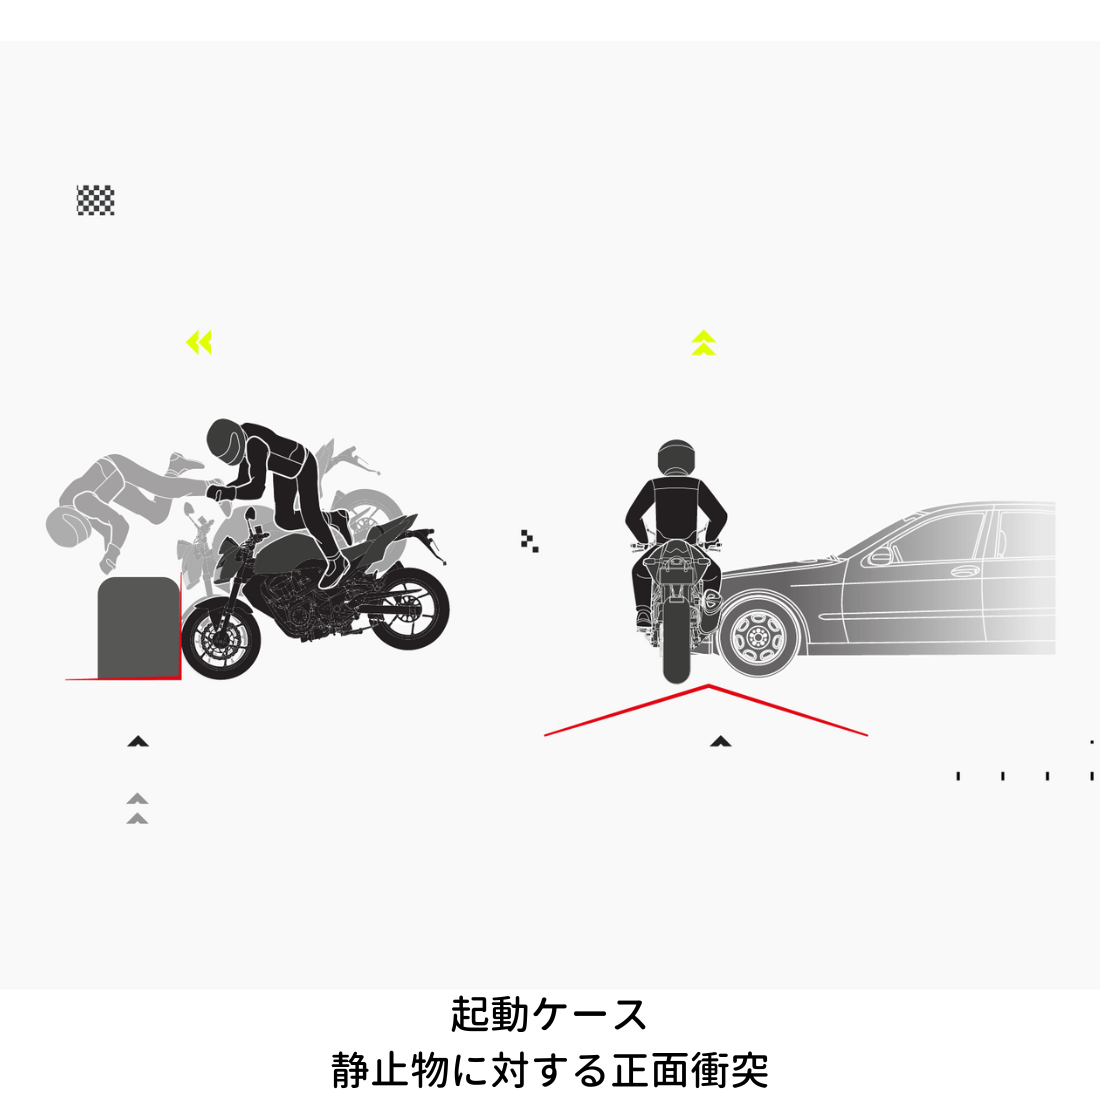 バイク専用エアバッグシステムの起動シーン